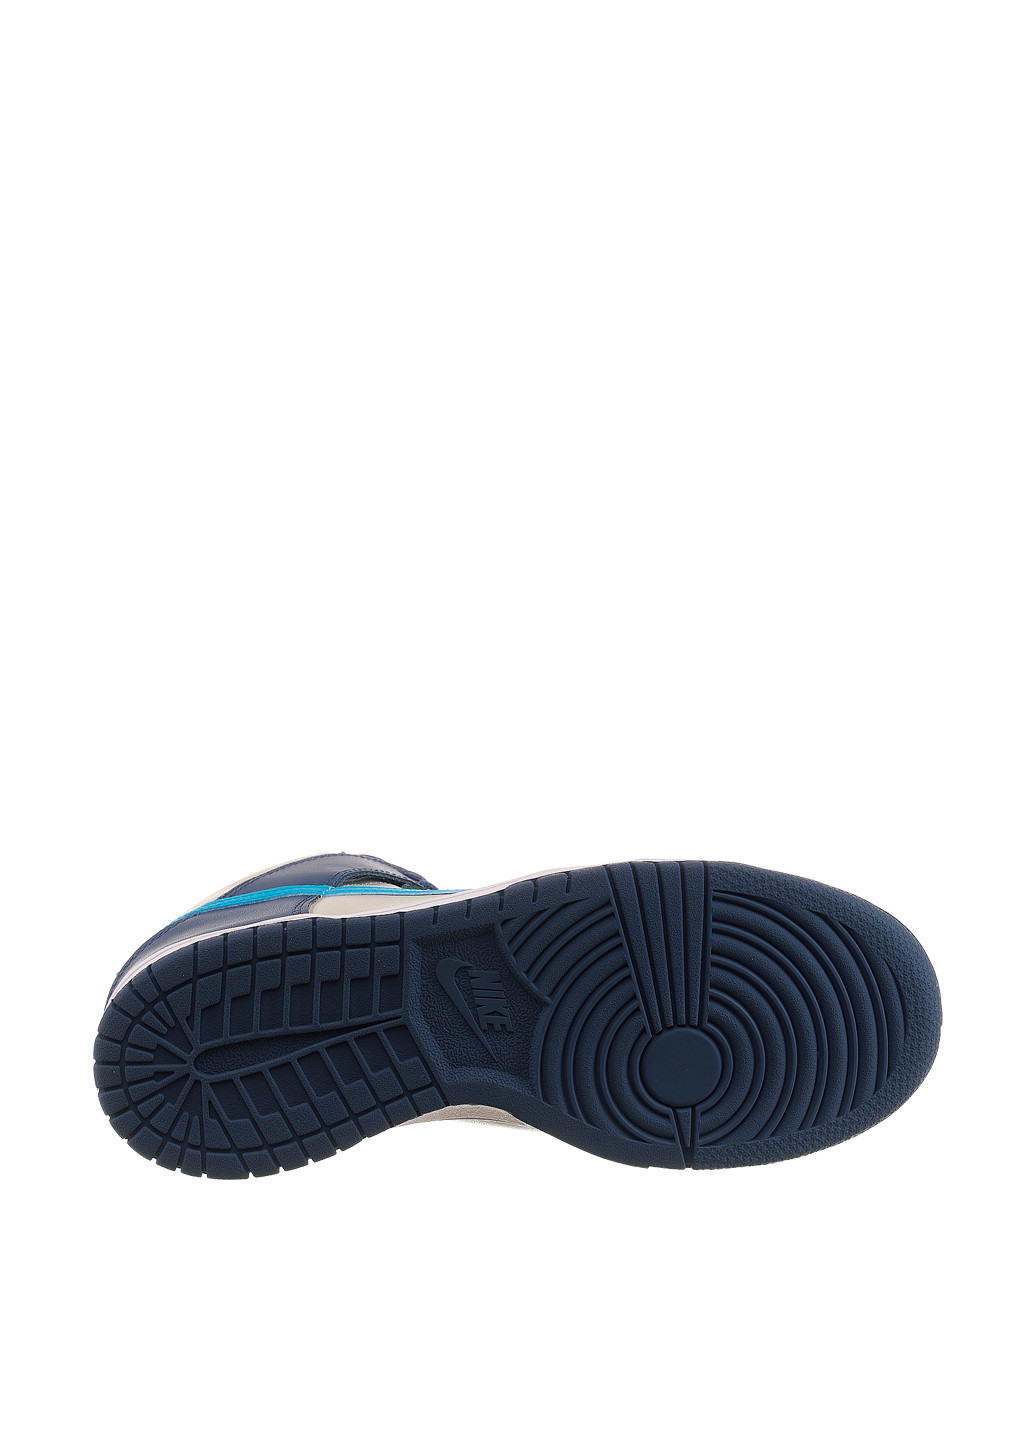 Цветные демисезонные кроссовки db2179-006_2024 Nike Dunk High Light Bone Diffused Blue Gs